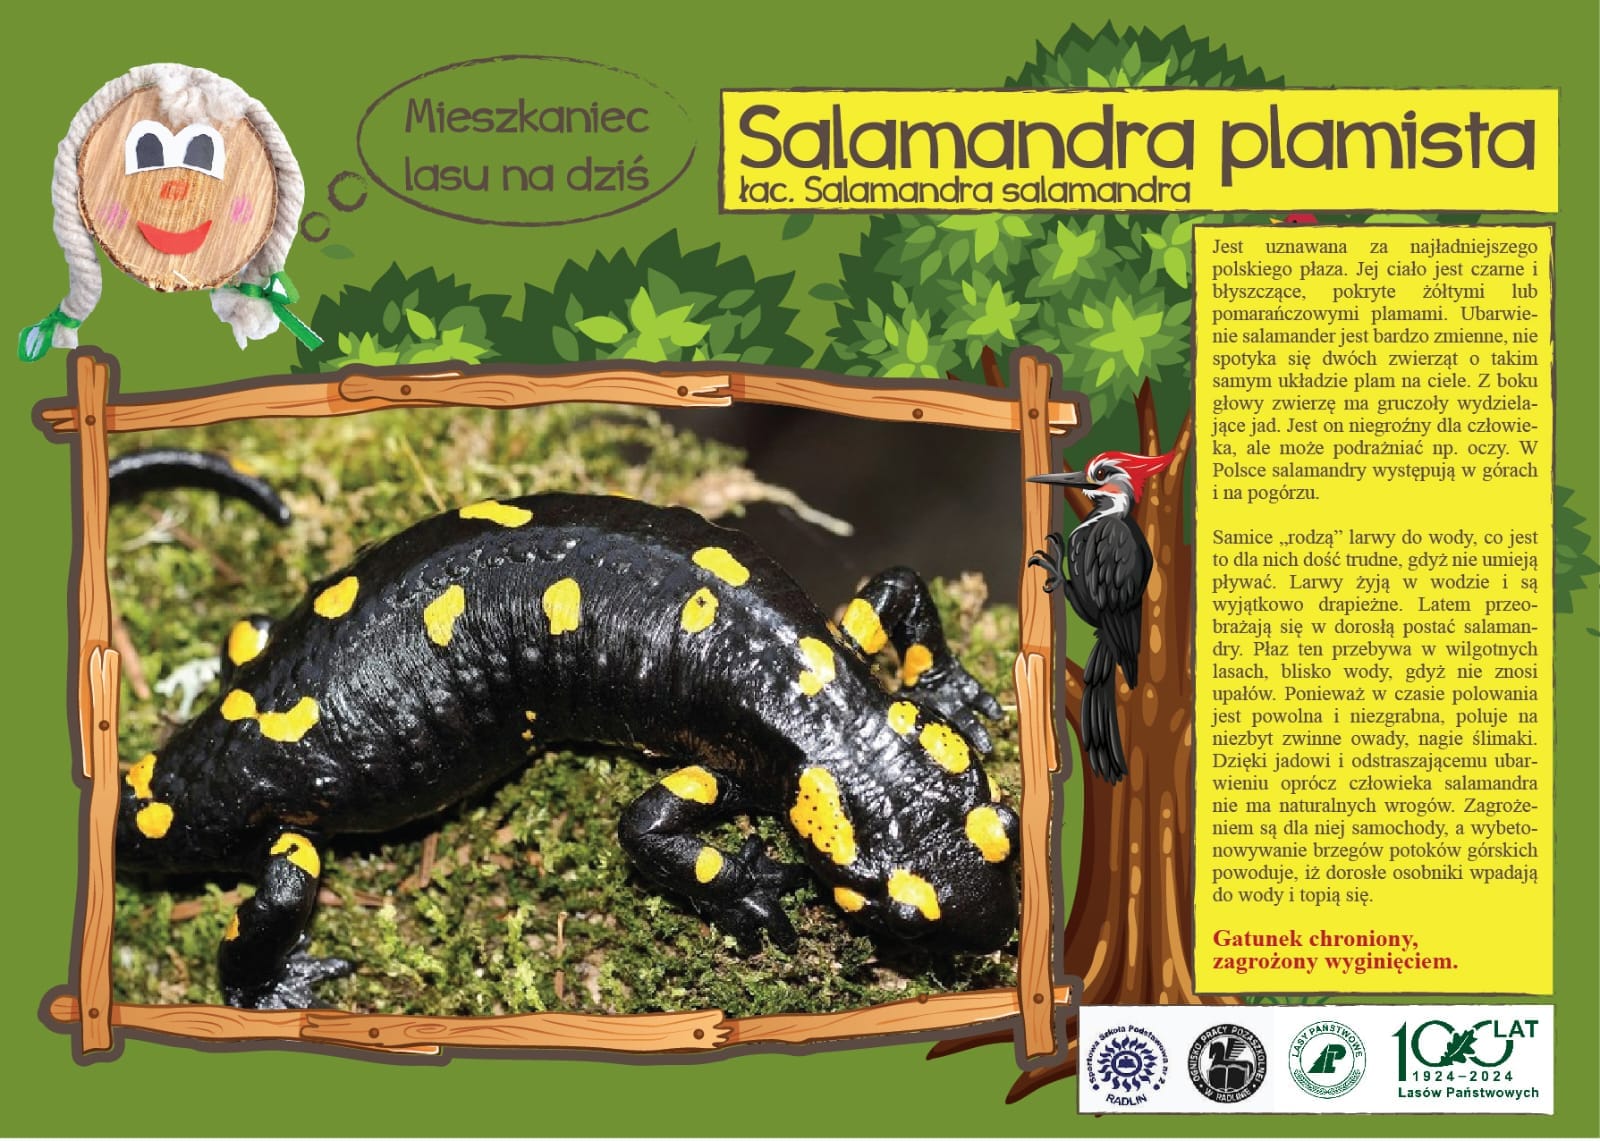 Mieszkaniec lasu na dziś - salamandra plamista